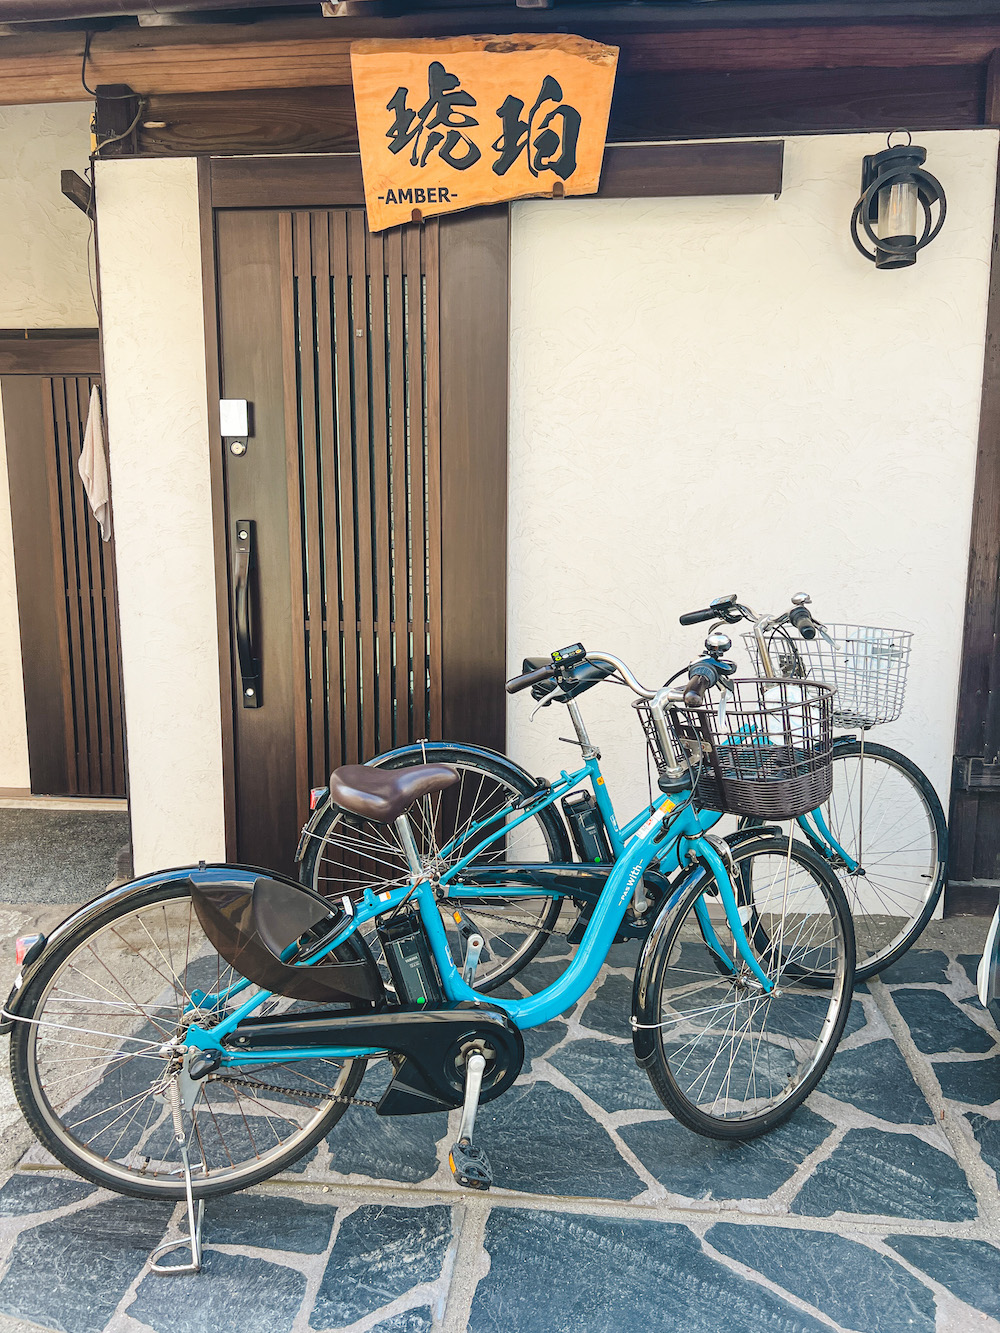 kamakura fietsen huren japan